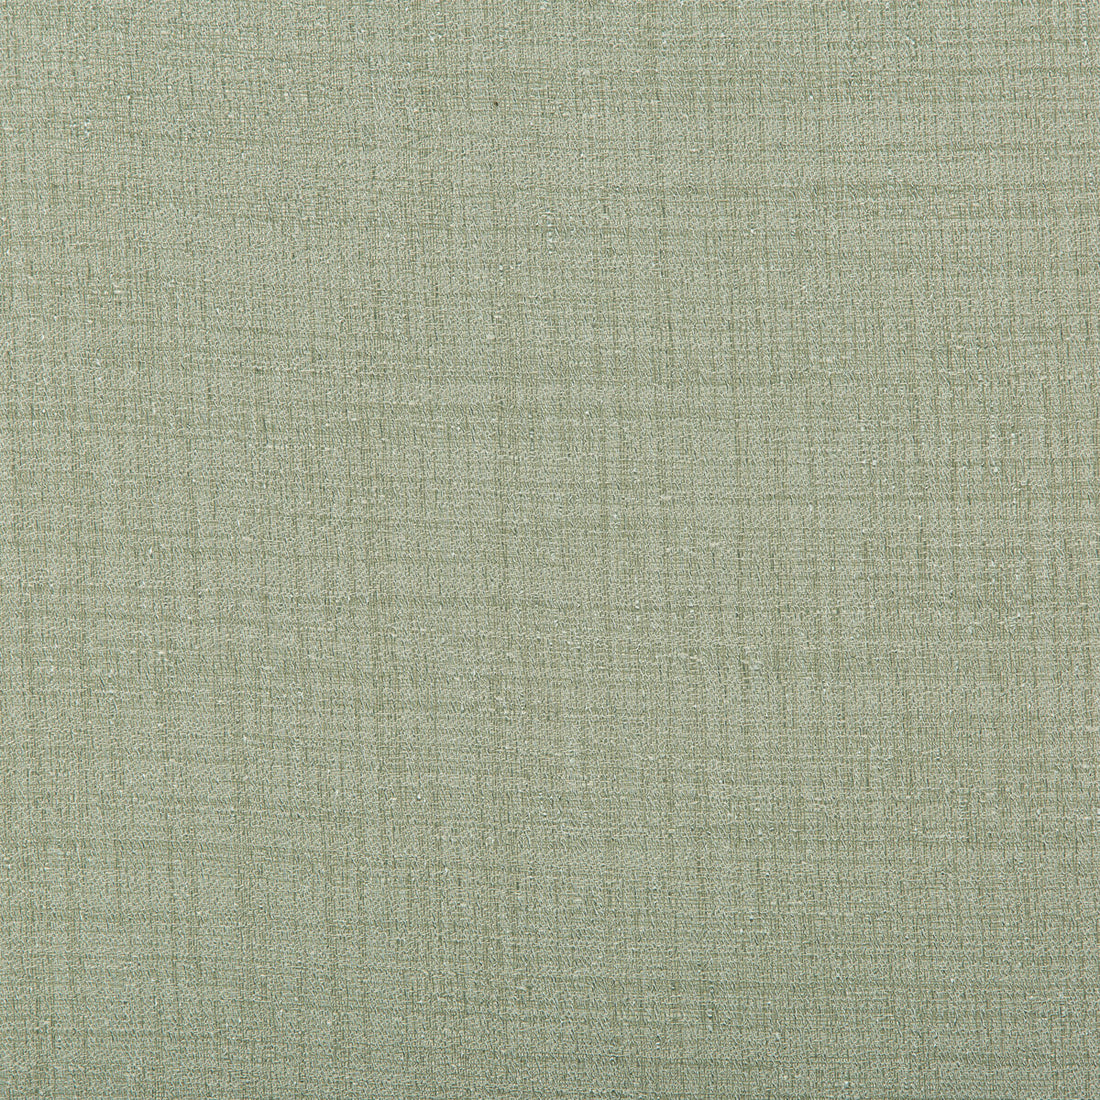 Kravet Basics fabric in 9789-35 color - pattern 9789.35.0 - by Kravet Basics